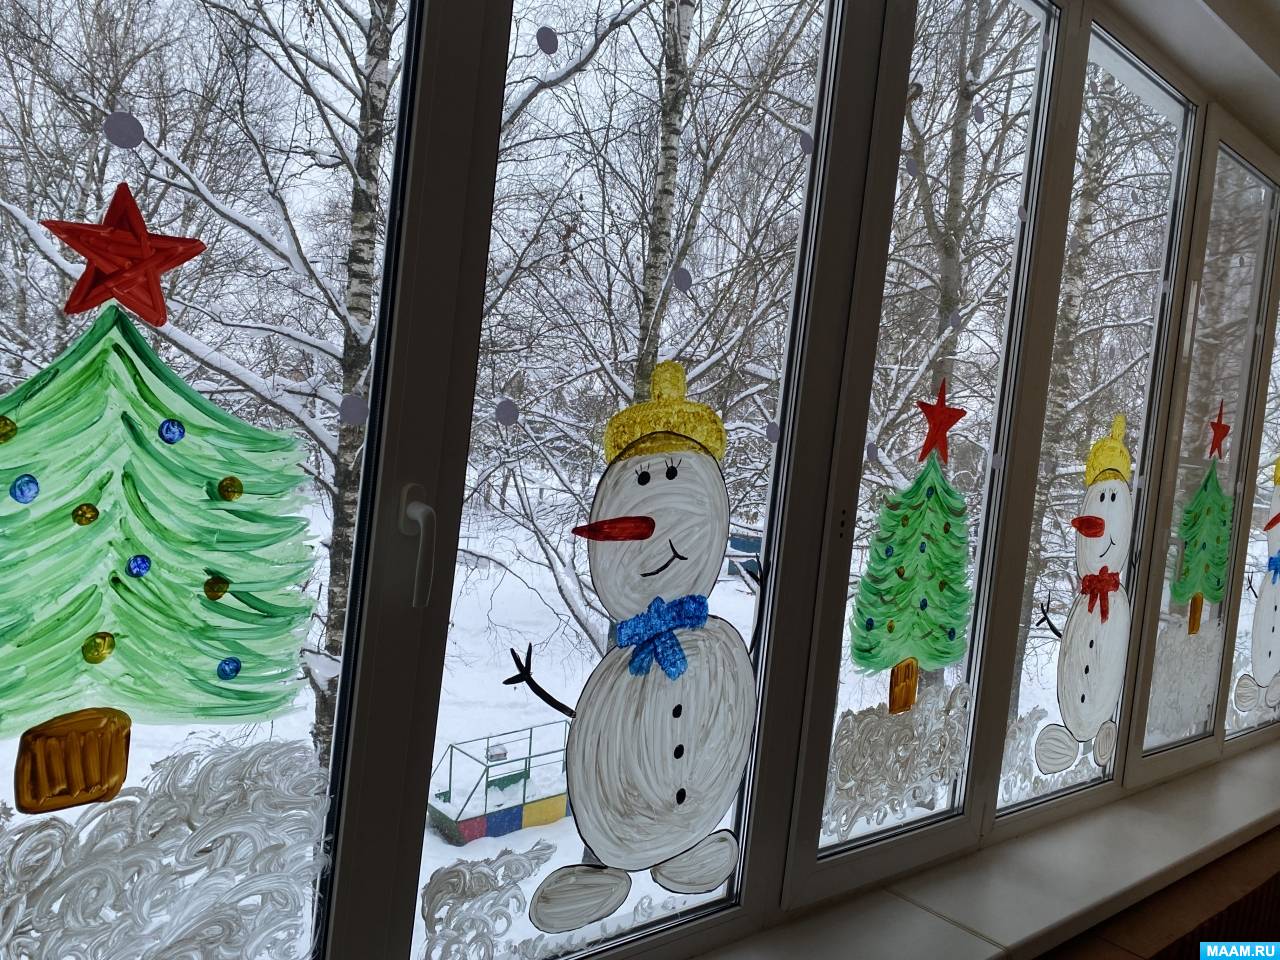 Рисуем на окнах к новому году - Новогодние рисунки на окнах